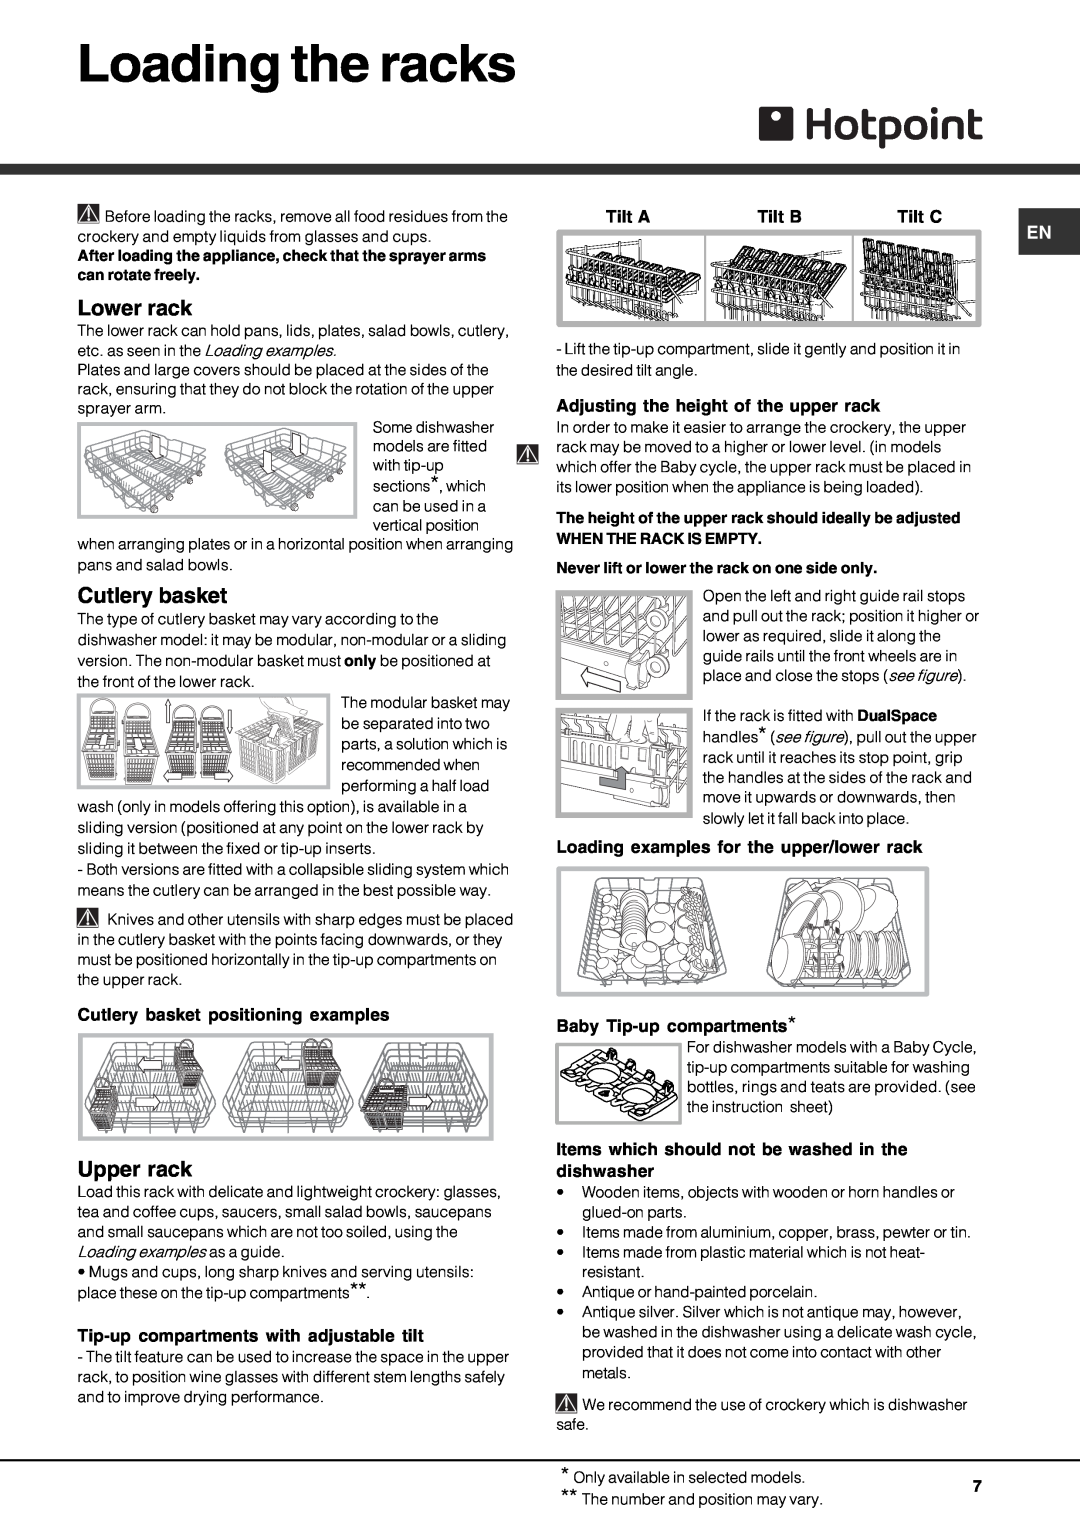 Hotpoint FDD 914 manual Loading the racks, Lower rack, Cutlery basket, Upper rack, Tilt A, Tilt B, Tilt C 